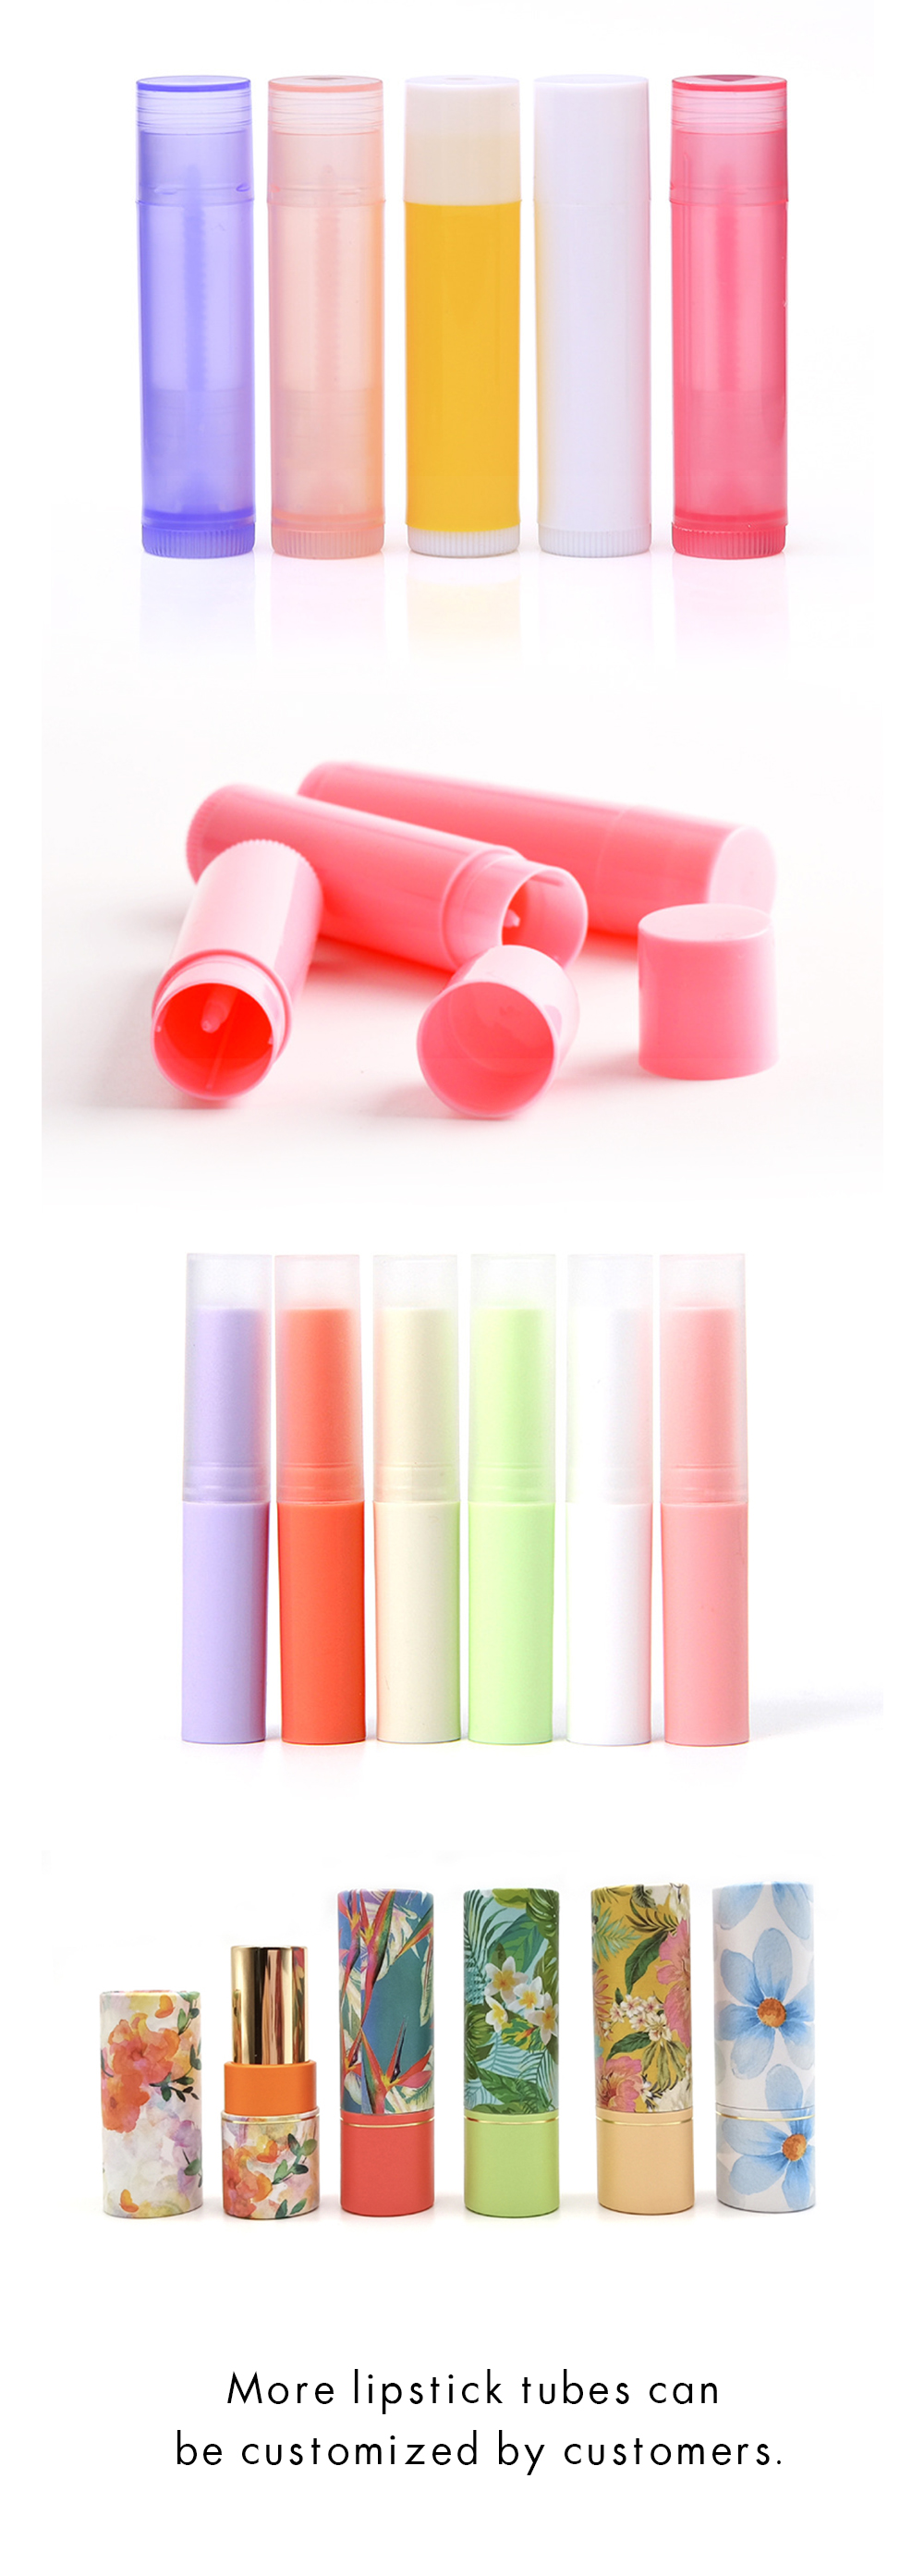 Lip balm tube customization